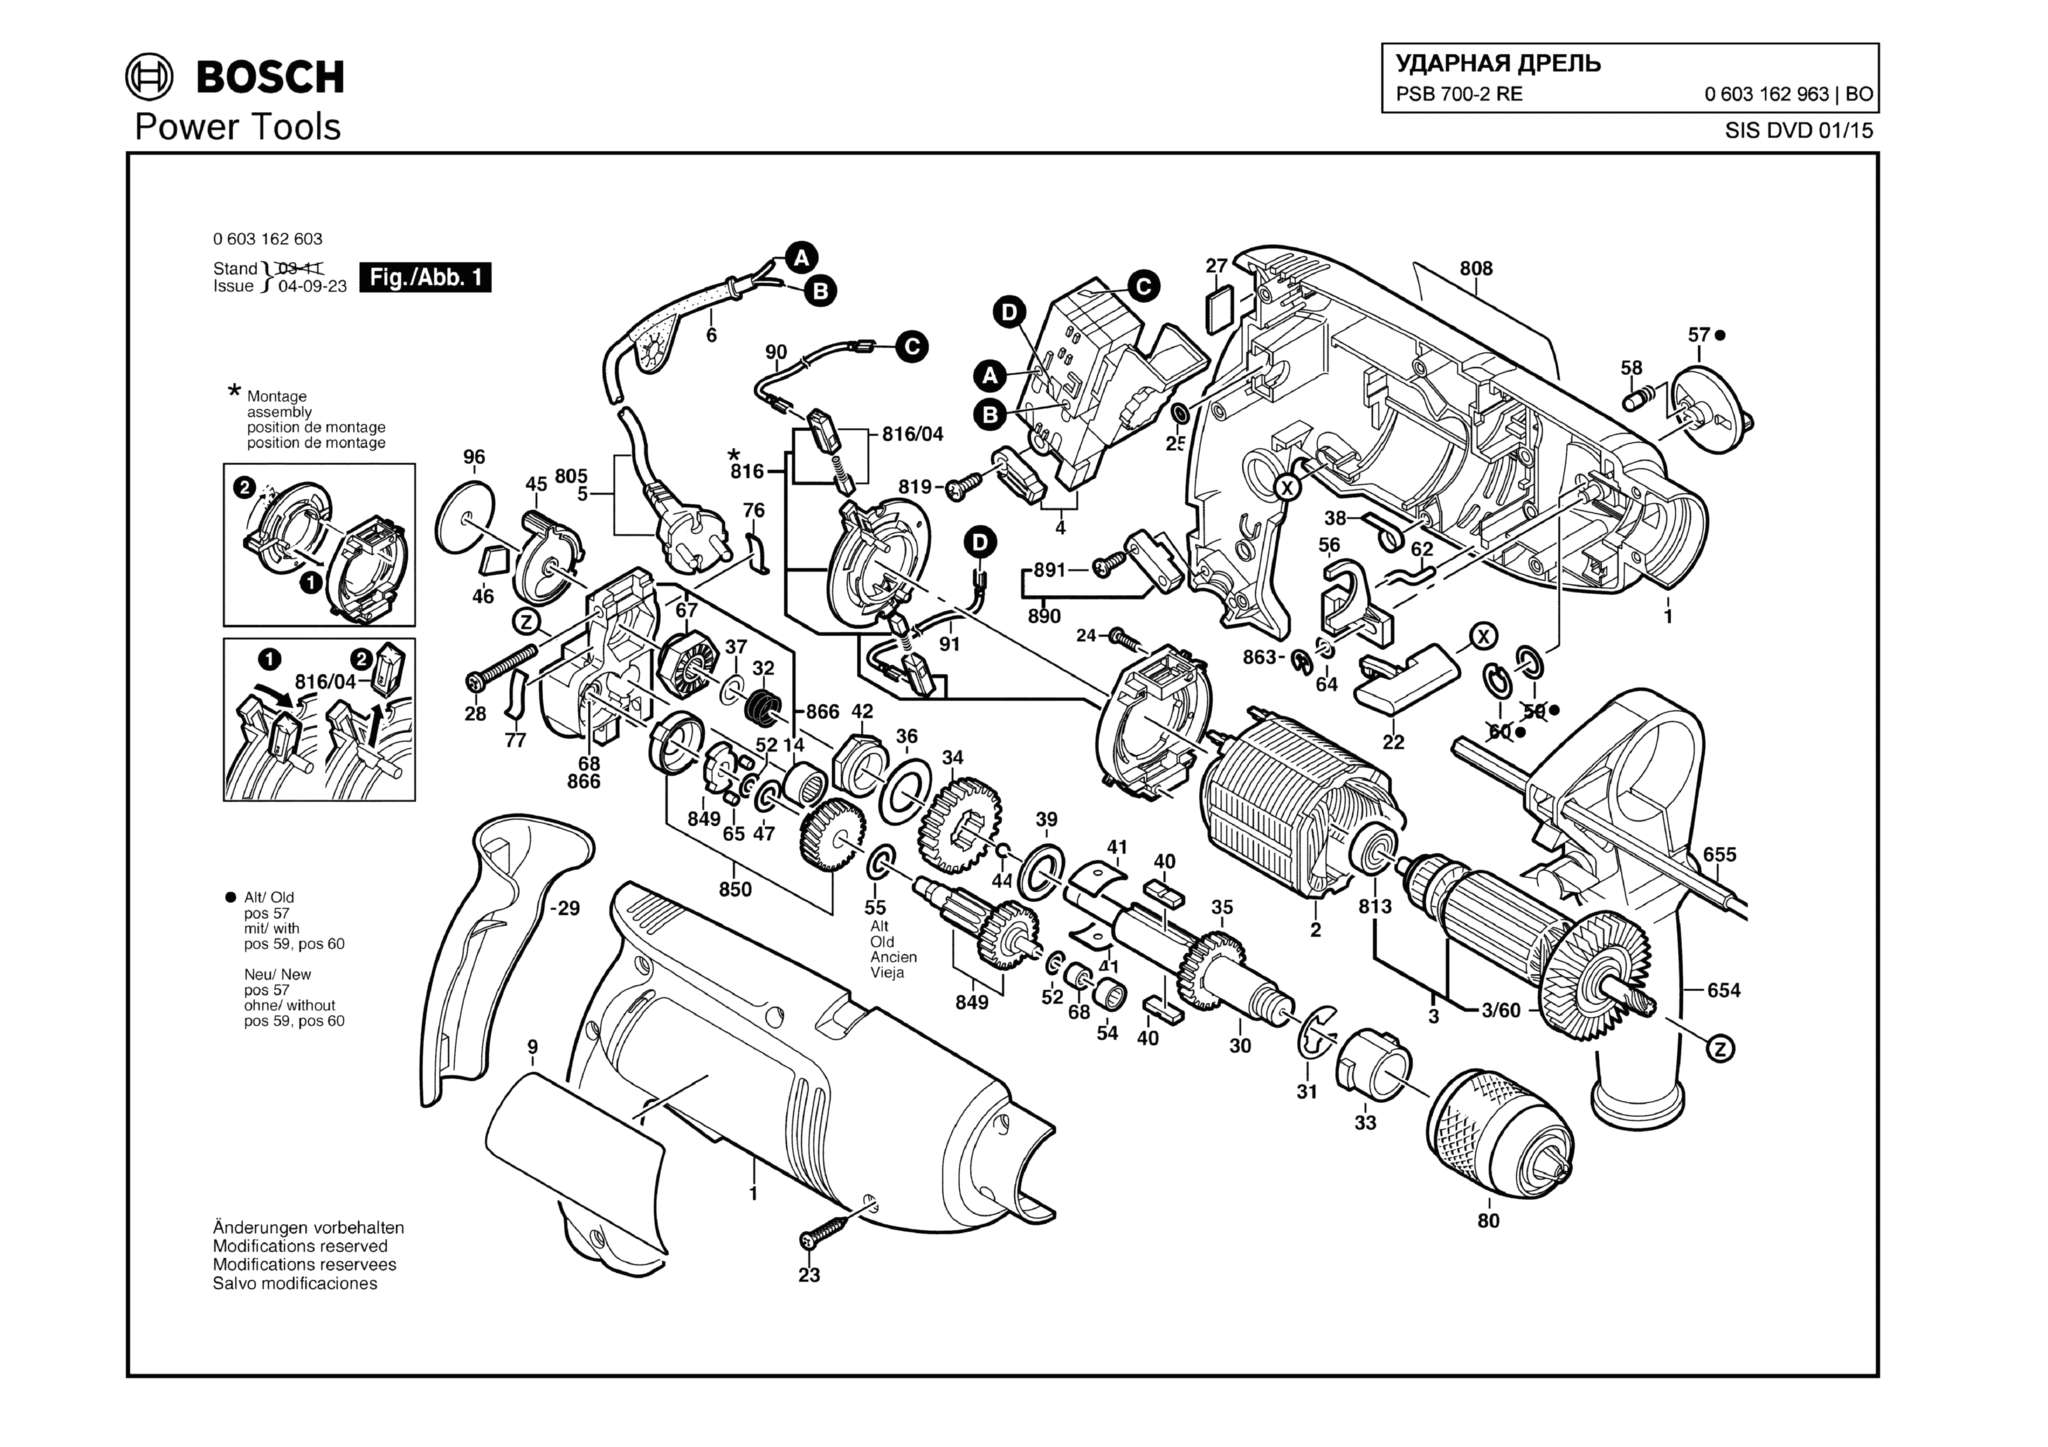 Запчасти, схема и деталировка Bosch PSB 700-2 RE (ТИП 0603162963)